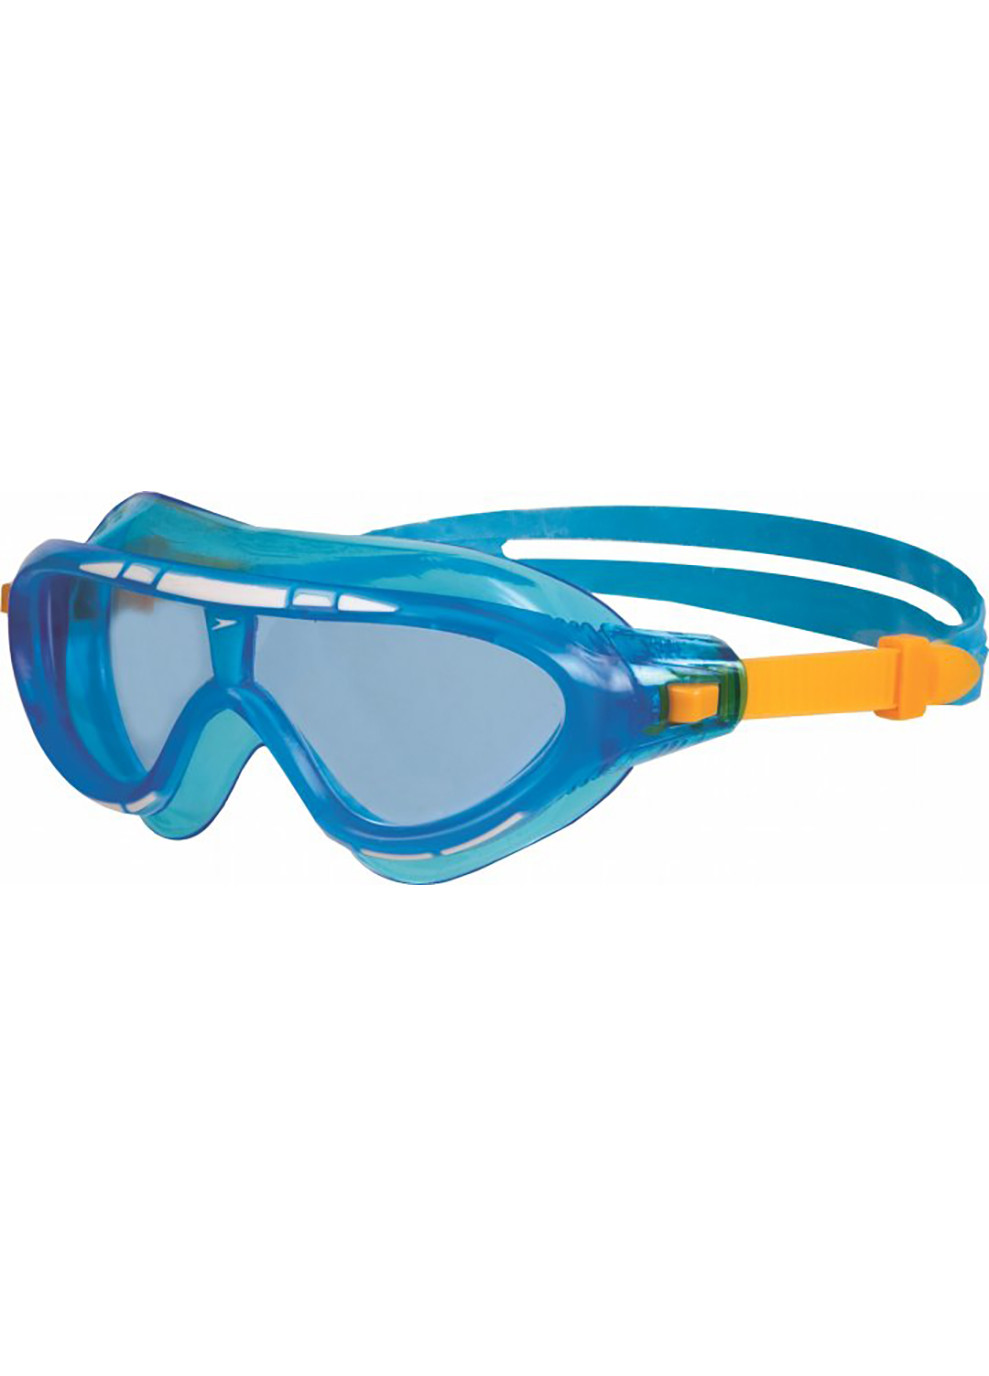 Очки для плавания RIFT GOG JU ASSORTED голубые (детские) ONESZ Speedo (259215176)